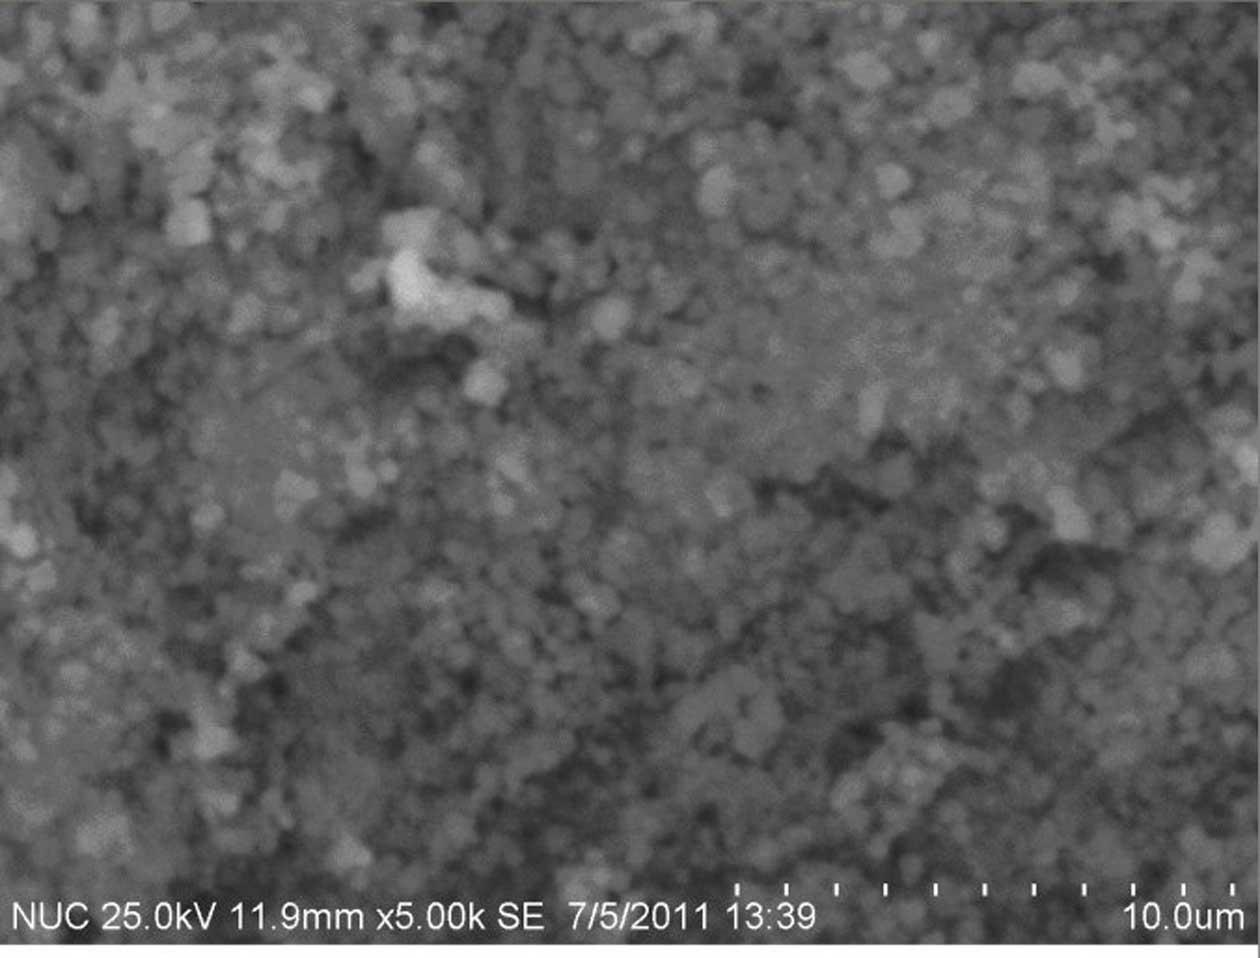 Method for preparing soft magnetic mesoporous nickel-zinc ferrite microspheres